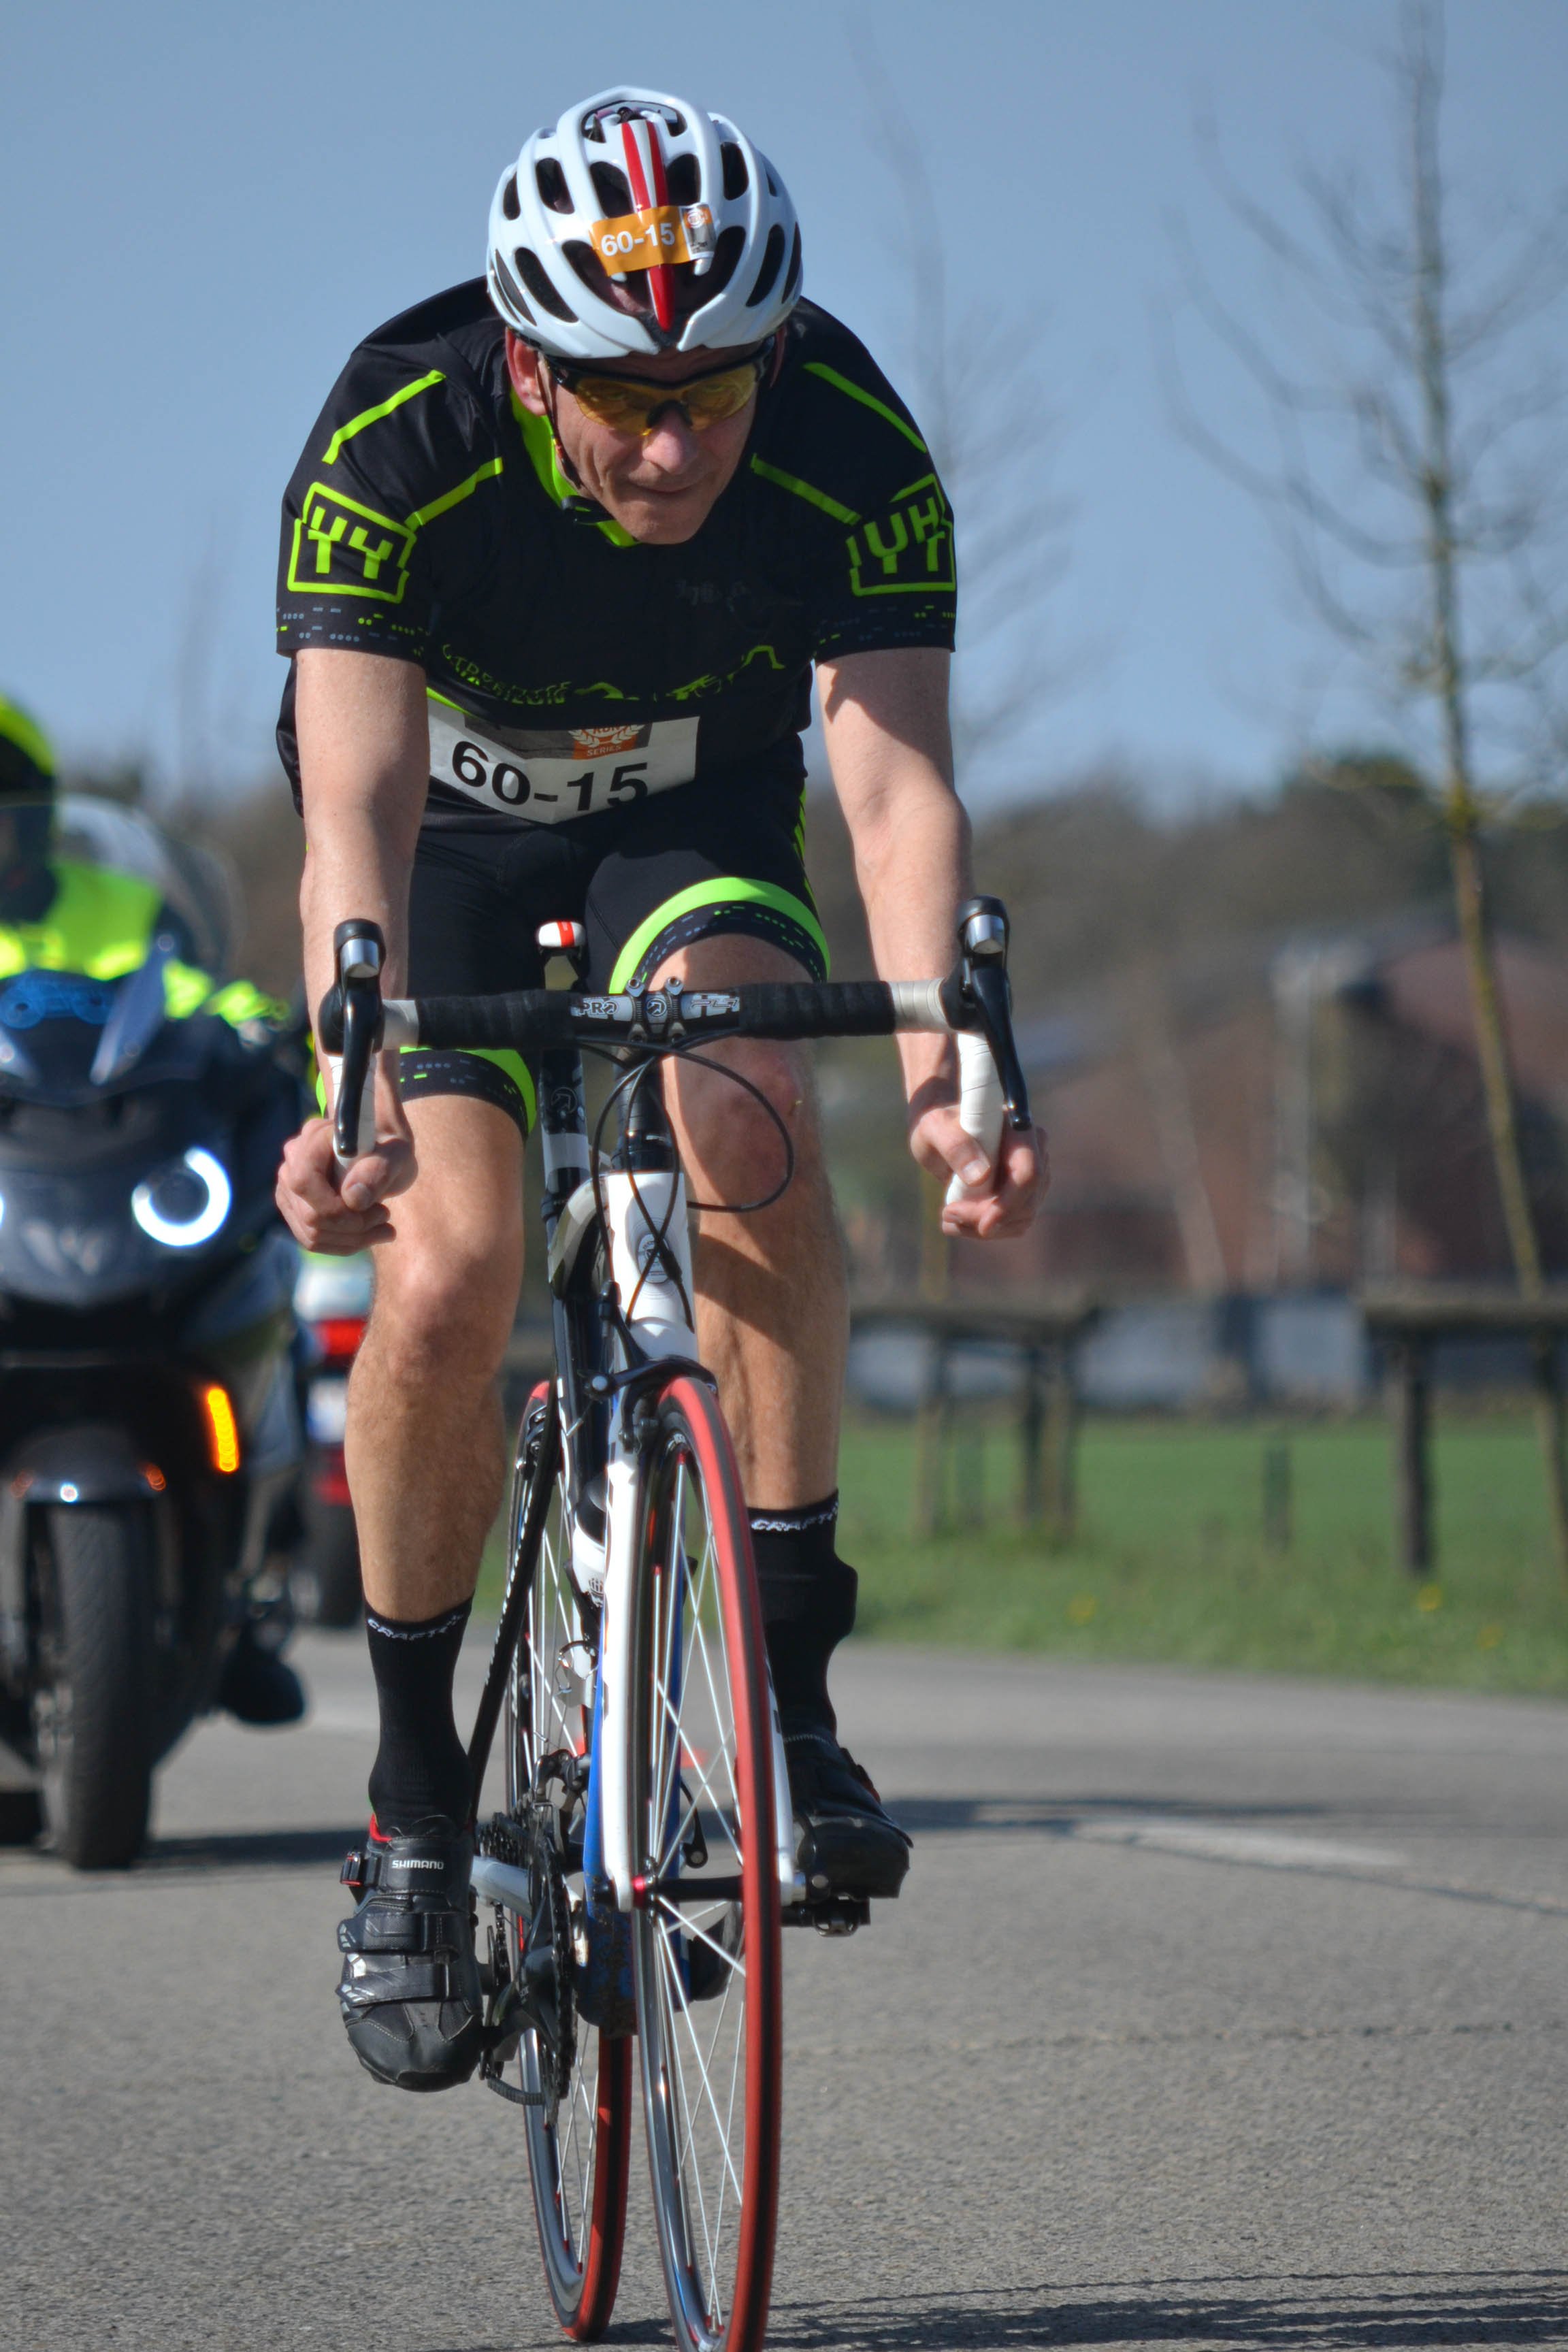 competitie - UHTT Run Bike Run Team Geel Erick Fiets 2 - UHTT Run Bike Run Team verrassend 11e in Challenge Duathlon Geel - raceverslag, Nederland, Hardlopen, Fietsen, competitie, 2018